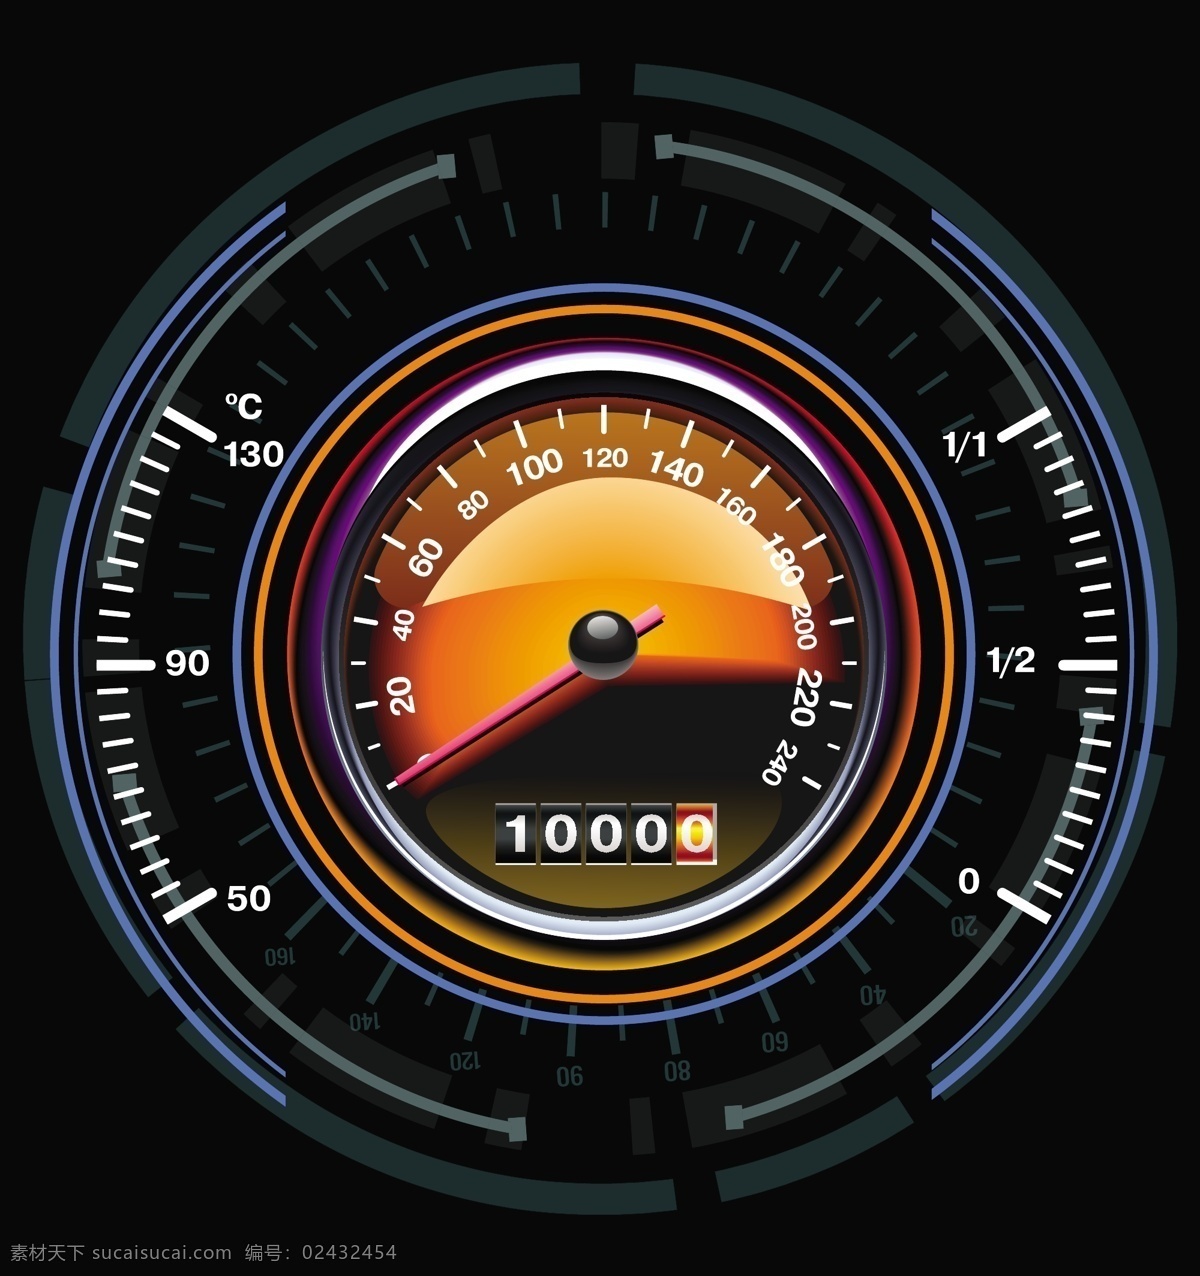 速度 仪表 矢量 背景 表 速度仪表 仪器 计速器 矢量背景